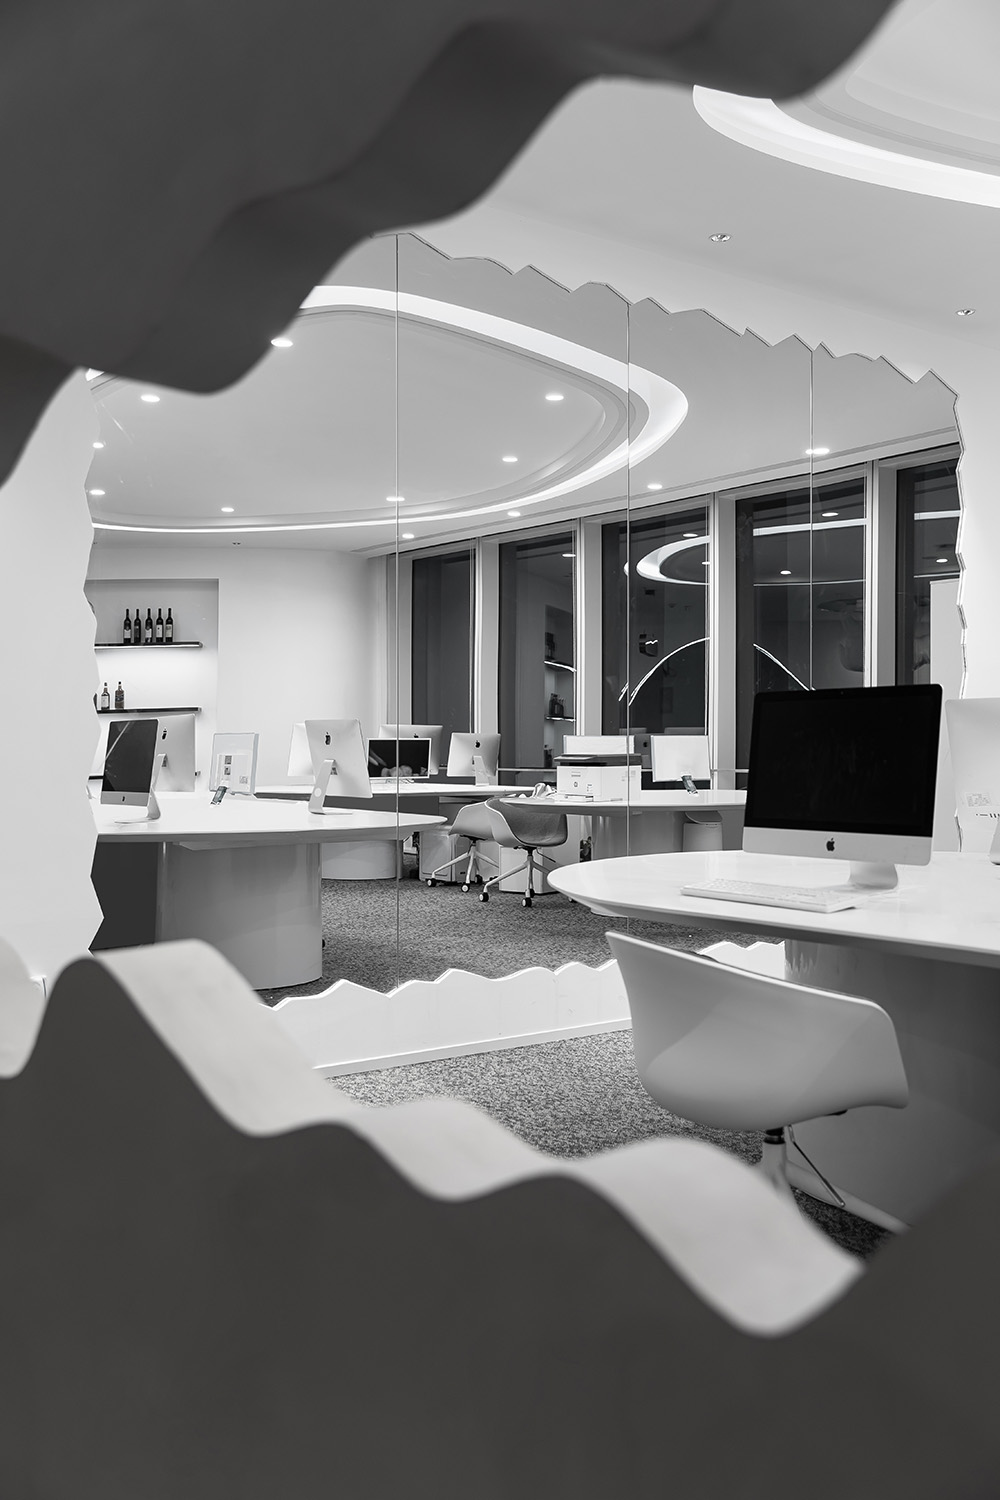 办公室设计,办公空间设计,上海办公室设计,办公室设计案例,科技公司办公室设计,开放式办公室设计,开放式办公室设计案例,原一空间设计,原一空间